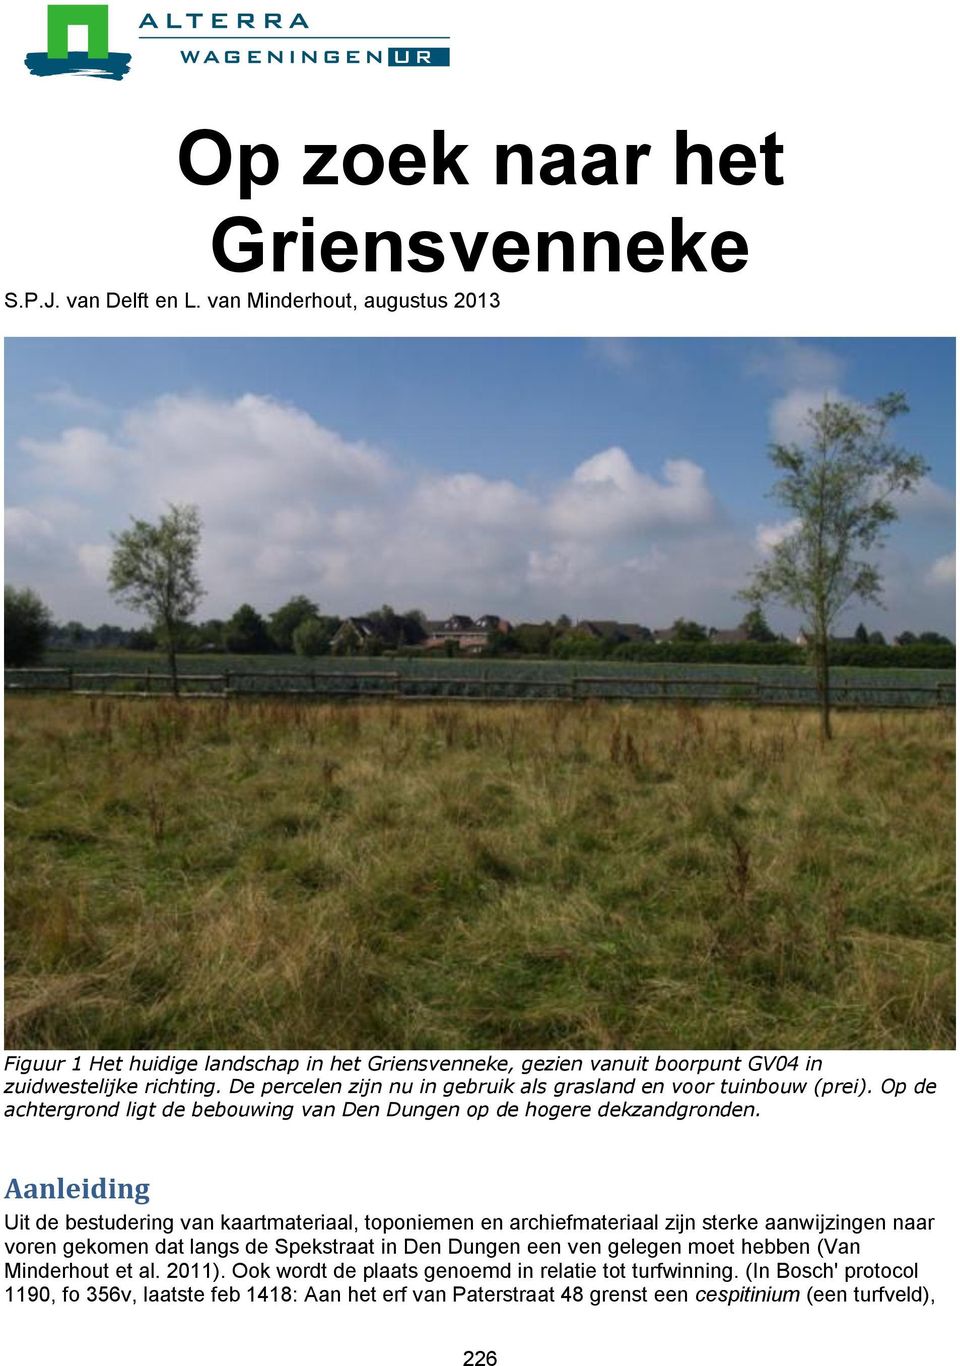 De percelen zijn nu in gebruik als grasland en voor tuinbouw (prei). Op de achtergrond ligt de bebouwing van Den Dungen op de hogere dekzandgronden.